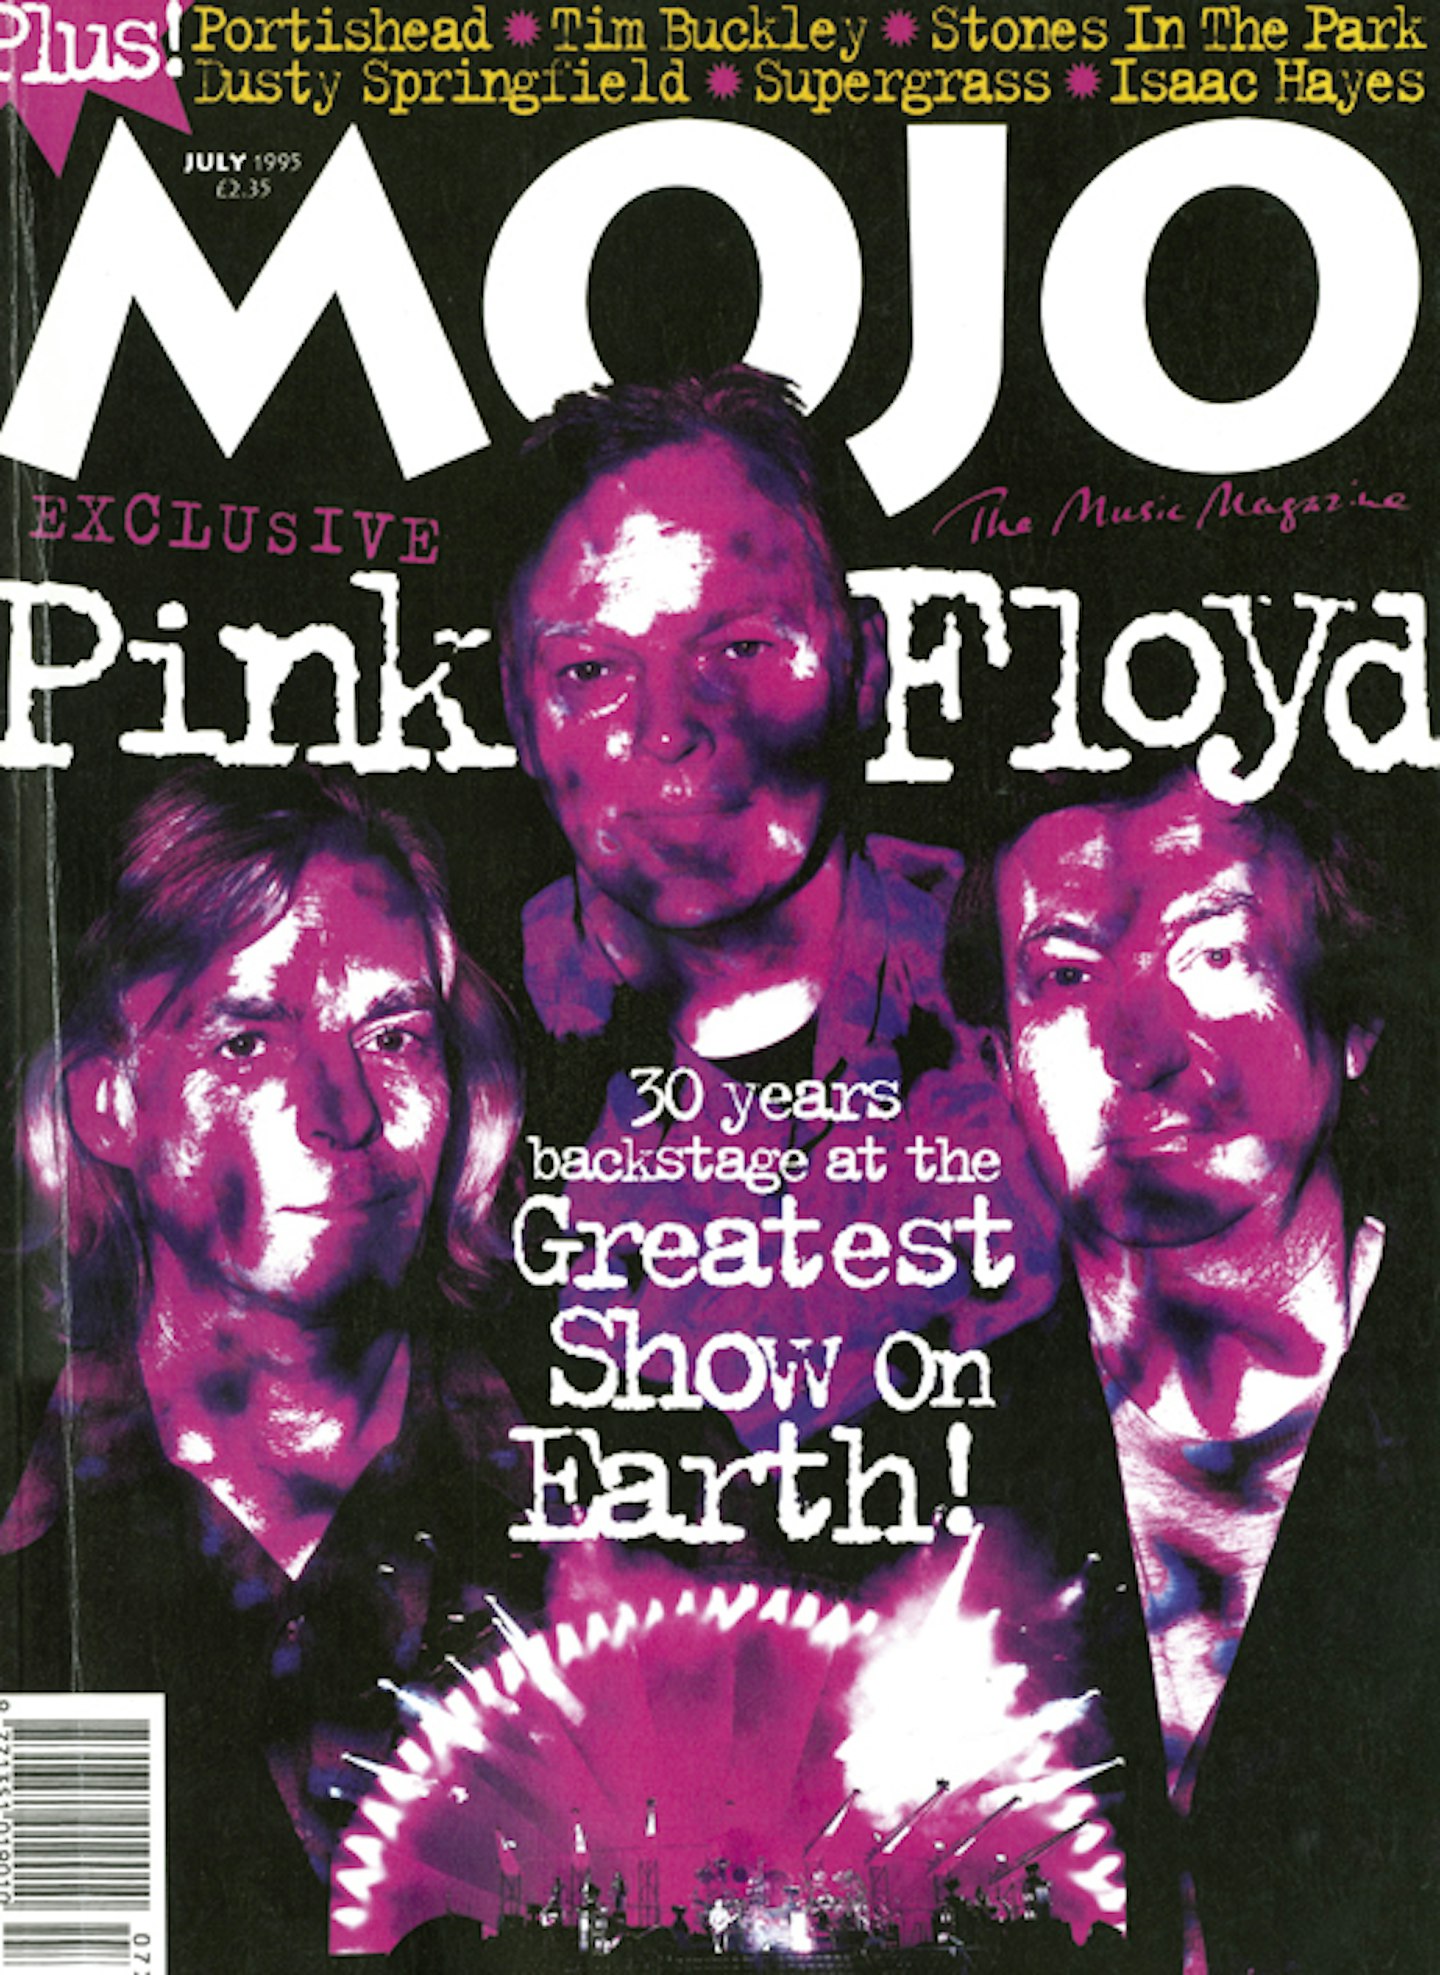 MOJO Issue 20 / July 1995